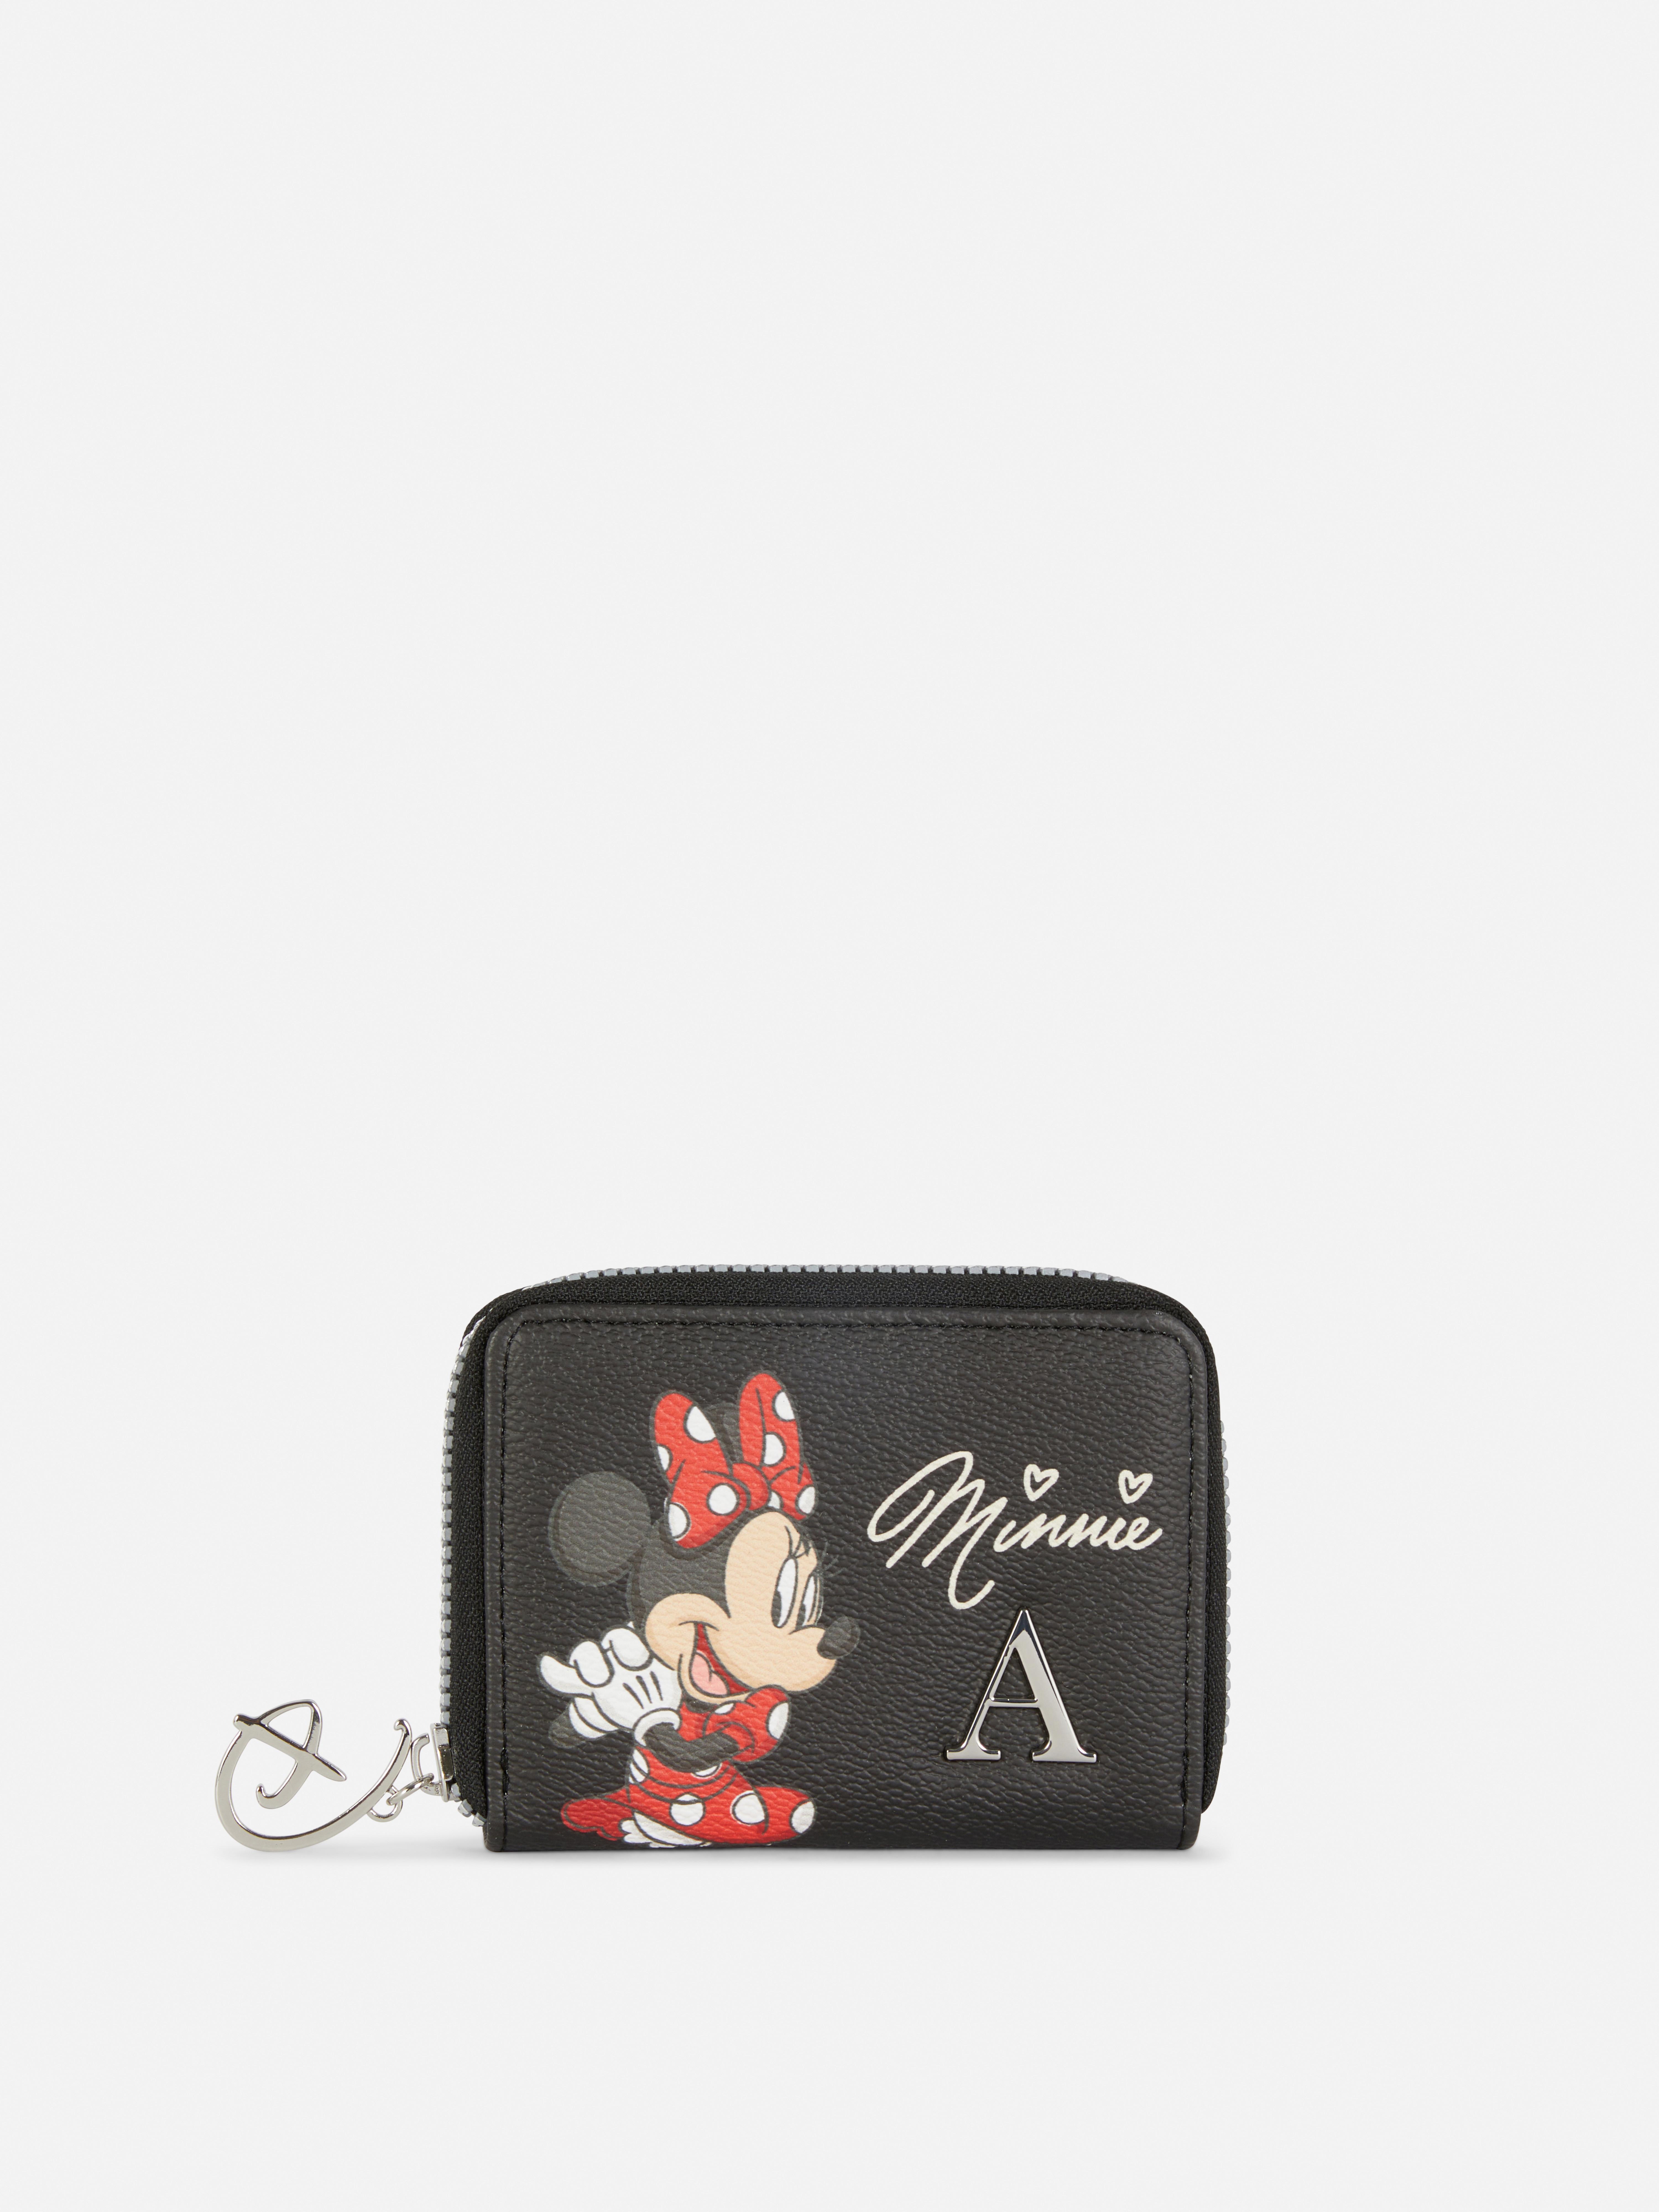 „Disney Minnie Maus“ Portemonnaie mit Initiale